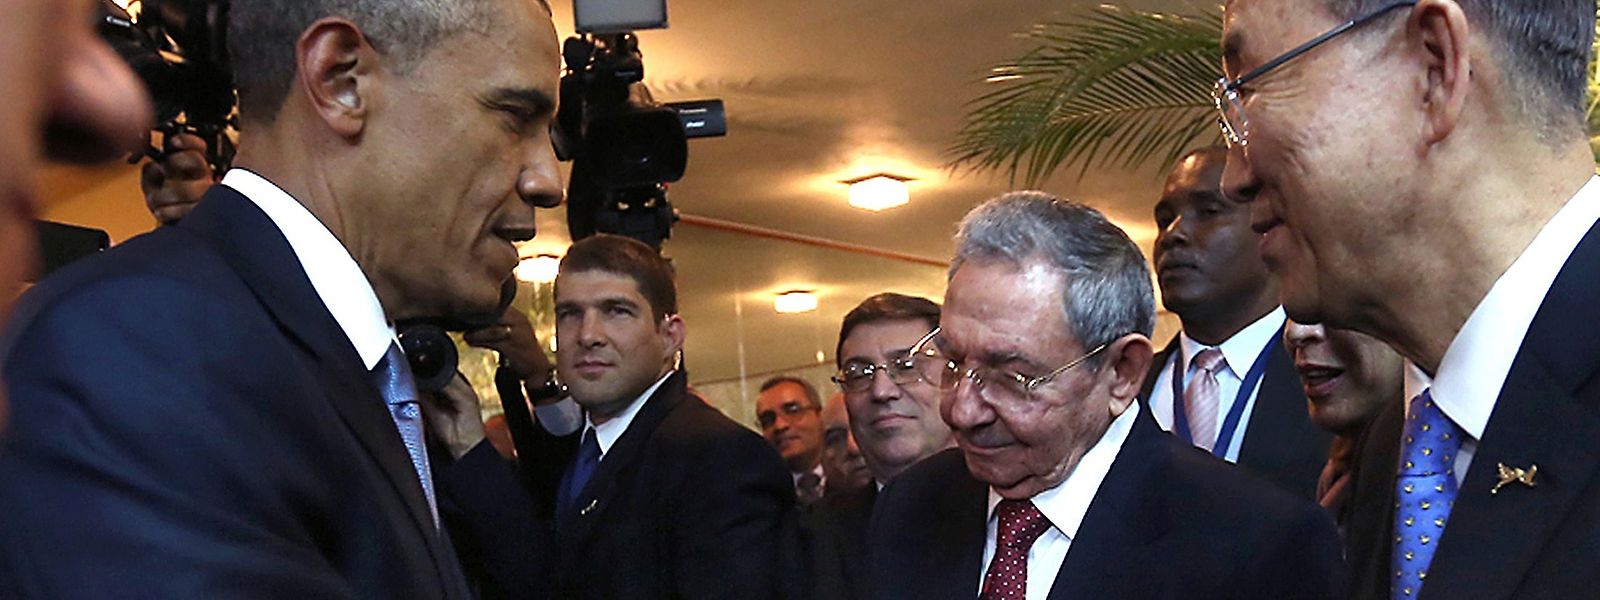 Auf diesen Augenblick wurde mit Spannung gewartet: US-Präsident Obama mit dem kubanischen Staatschef Raúl Castro. 